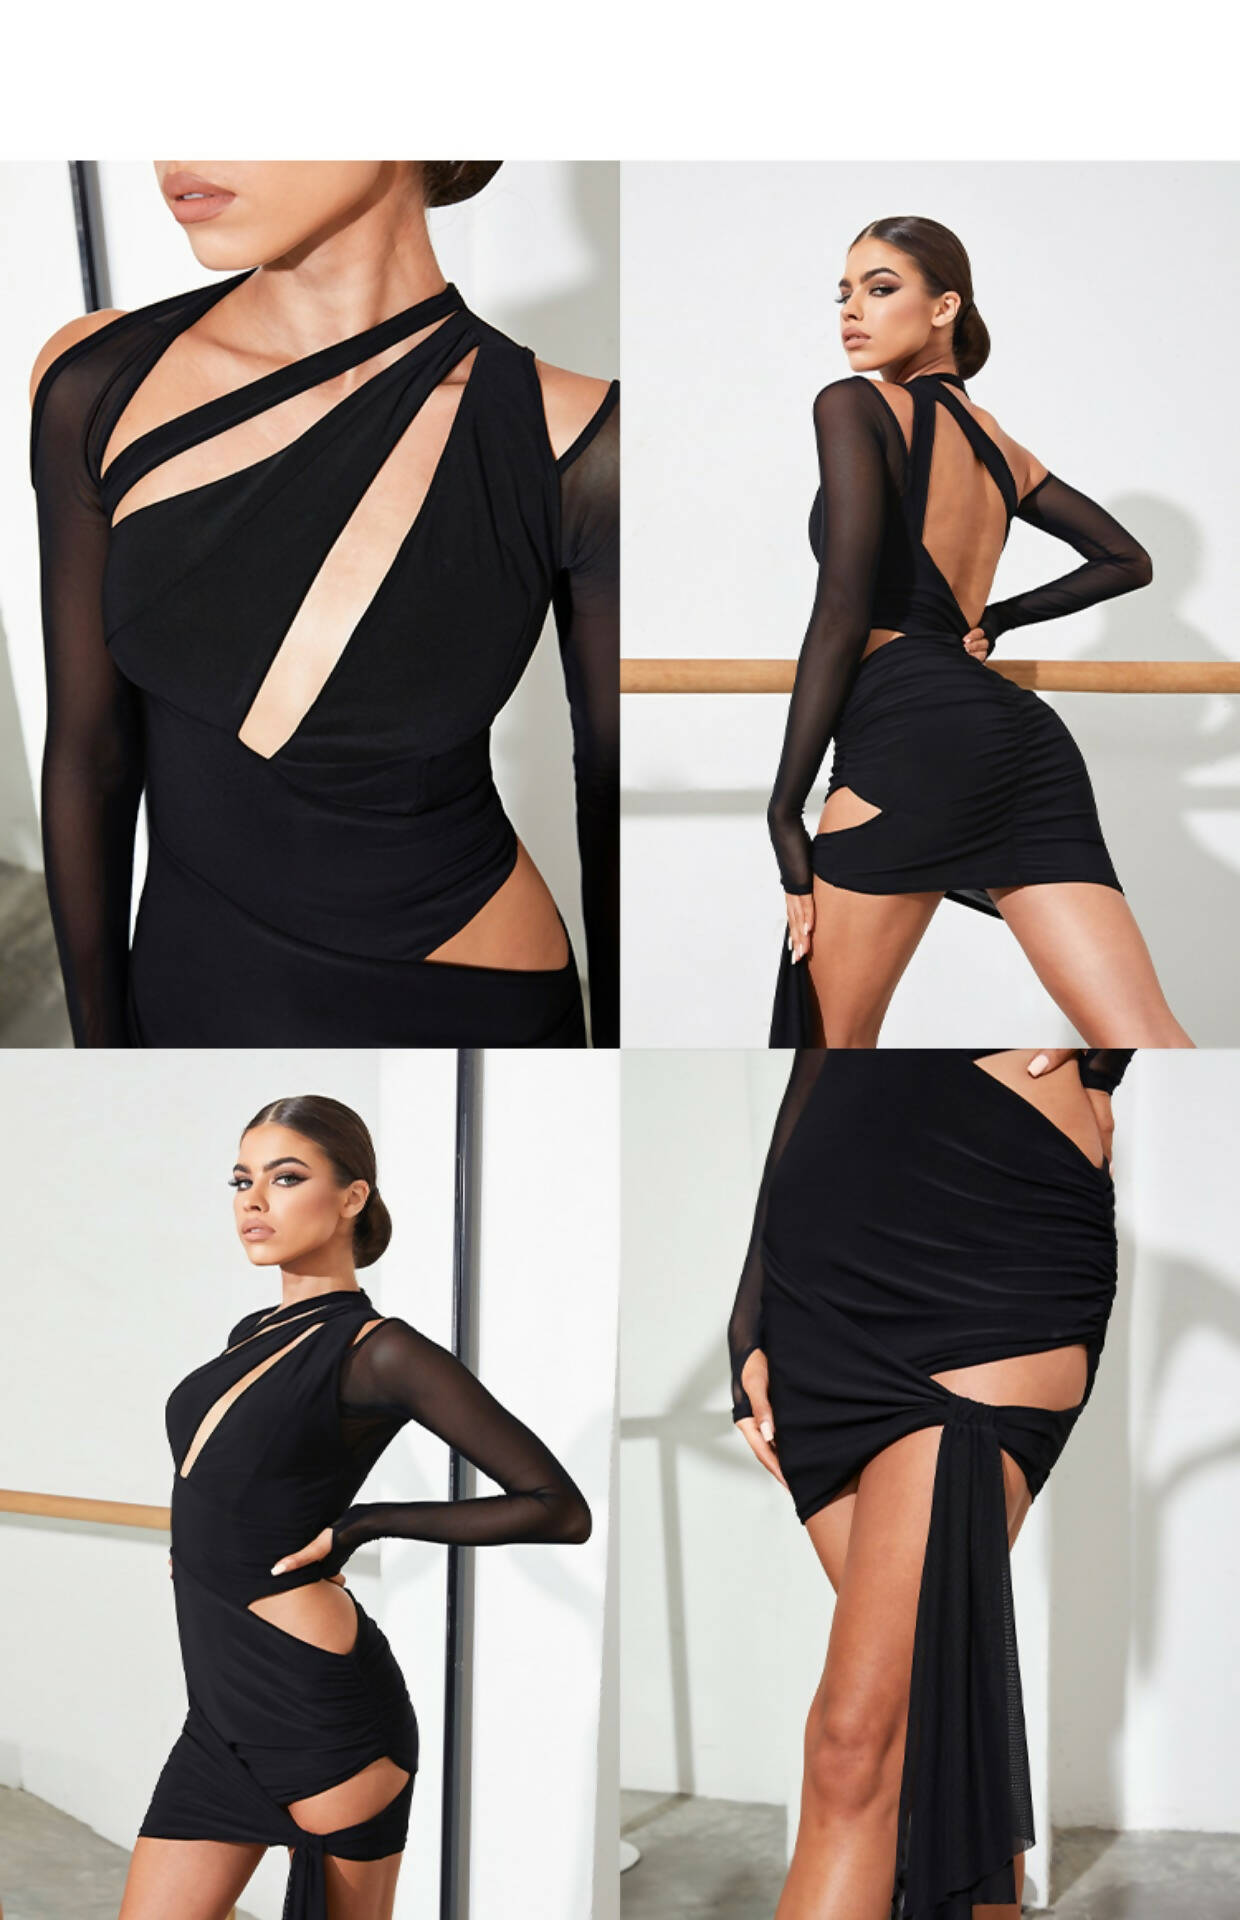 New Black Latin Dancewear Dress (dancewear, dance practice wear) 2238